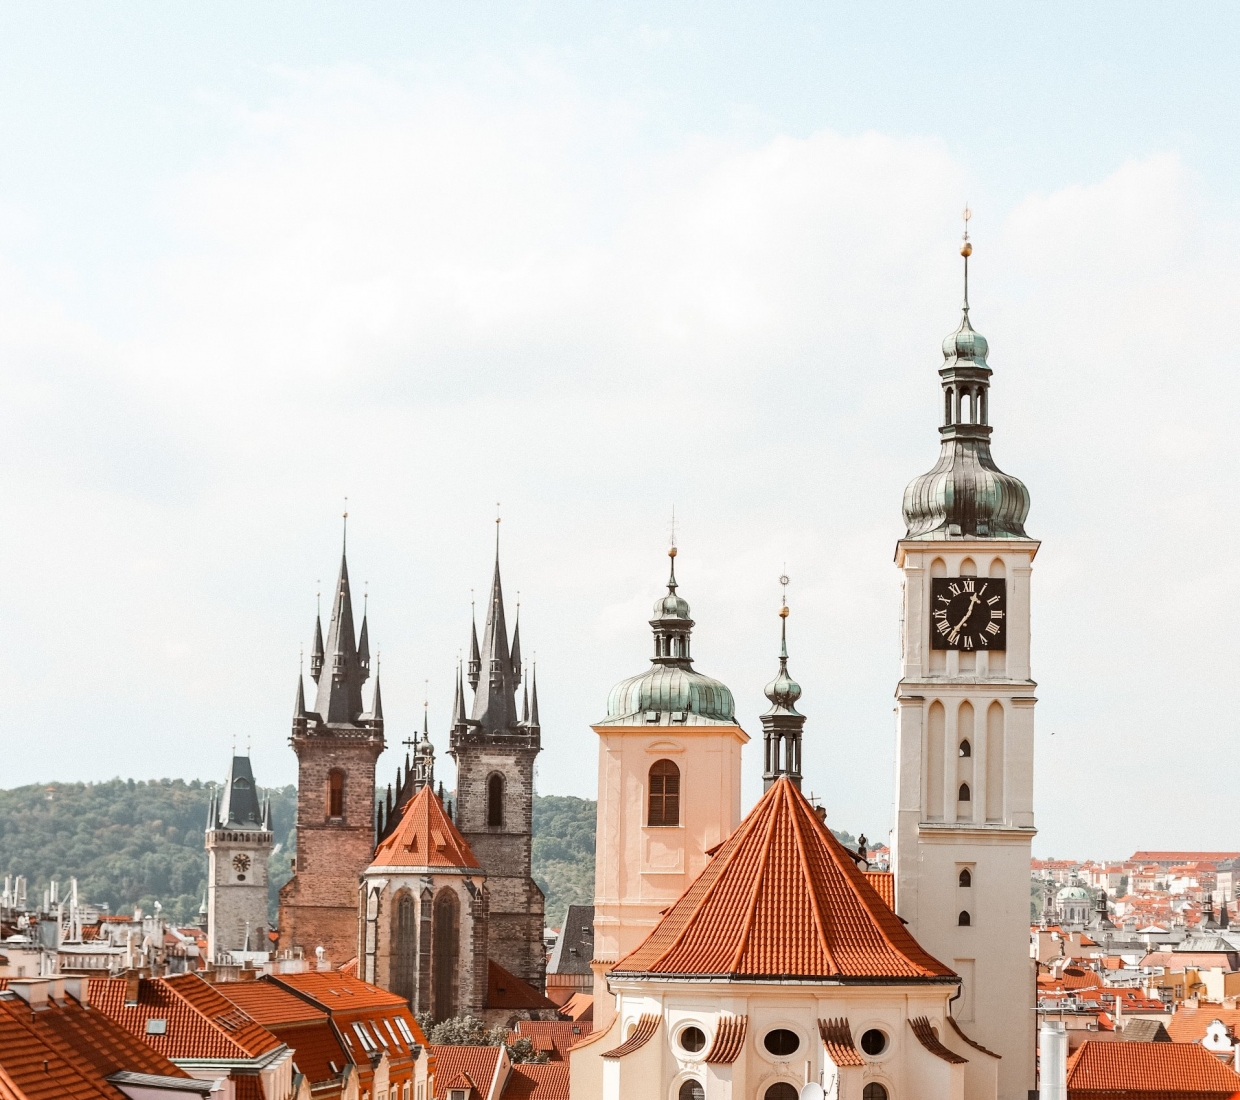 Seleção dos melhores e mais bonitos hotéis e casas de férias em Praga